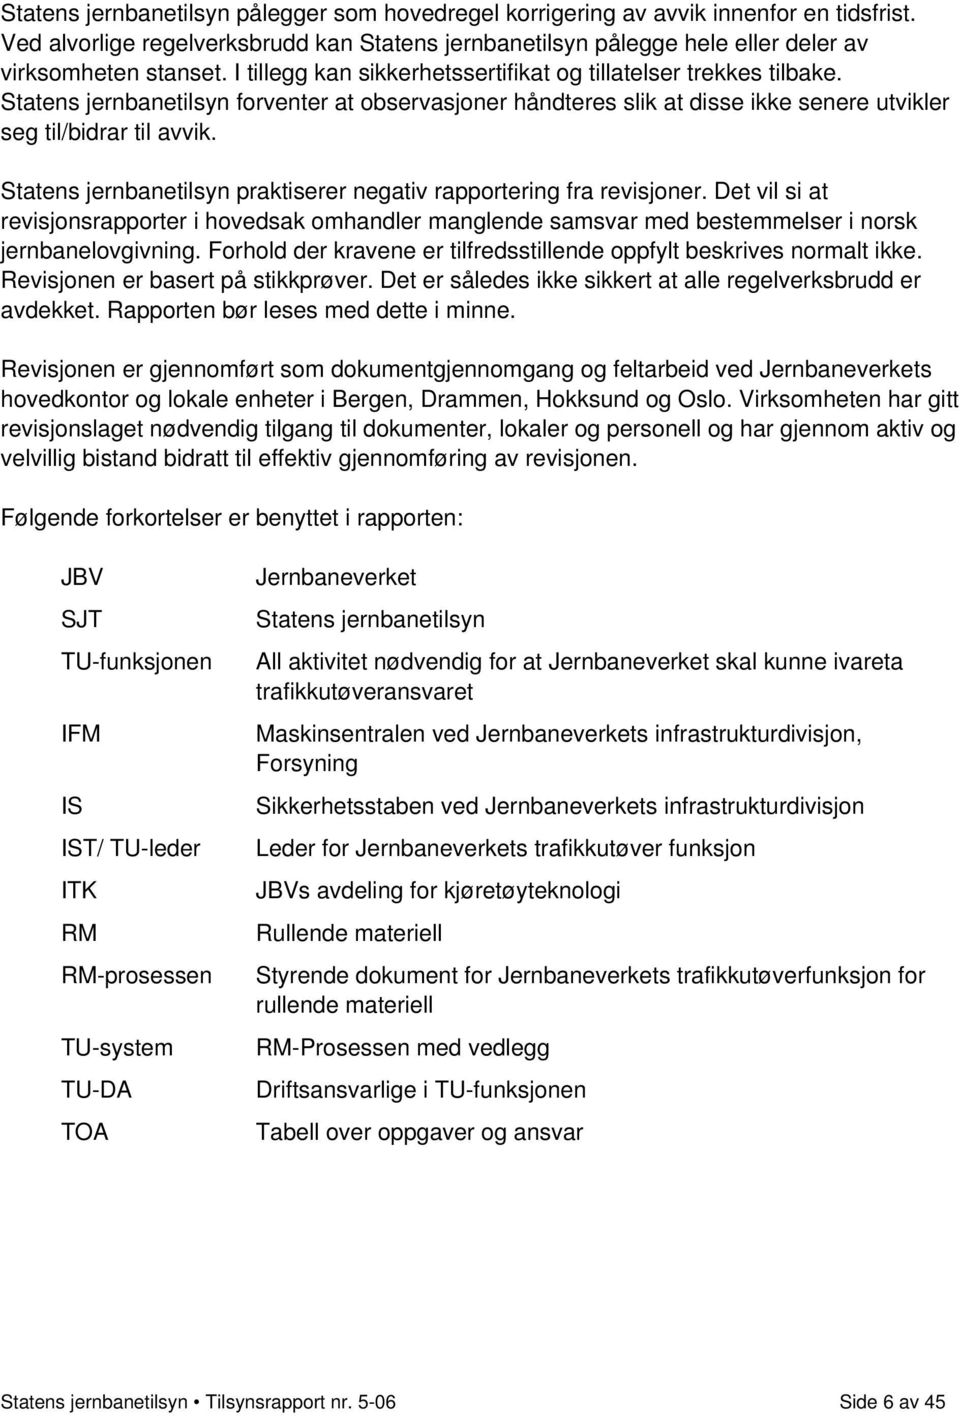 Statens jernbanetilsyn praktiserer negativ rapportering fra revisjoner. Det vil si at revisjonsrapporter i hovedsak omhandler manglende samsvar med bestemmelser i norsk jernbanelovgivning.